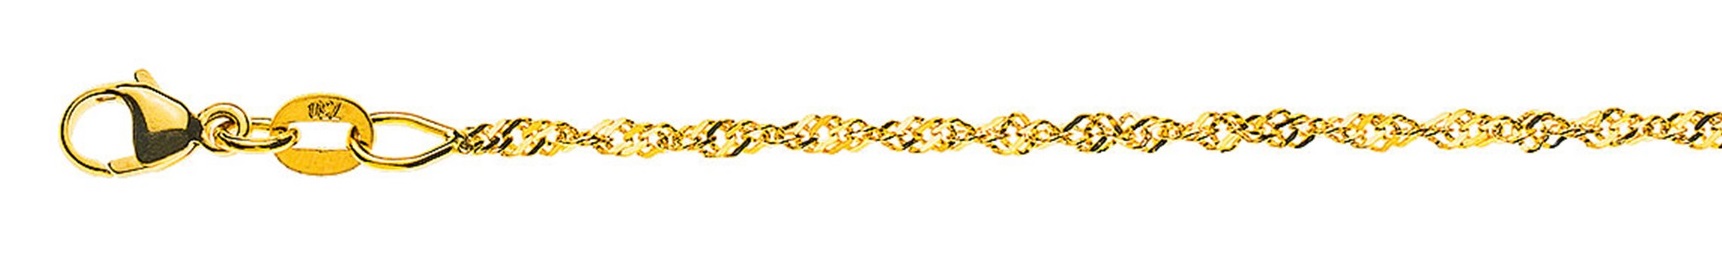 AURONOS Prestige Necklace Yellow Gold 18K Singapore Chain 40cm 1.5mm